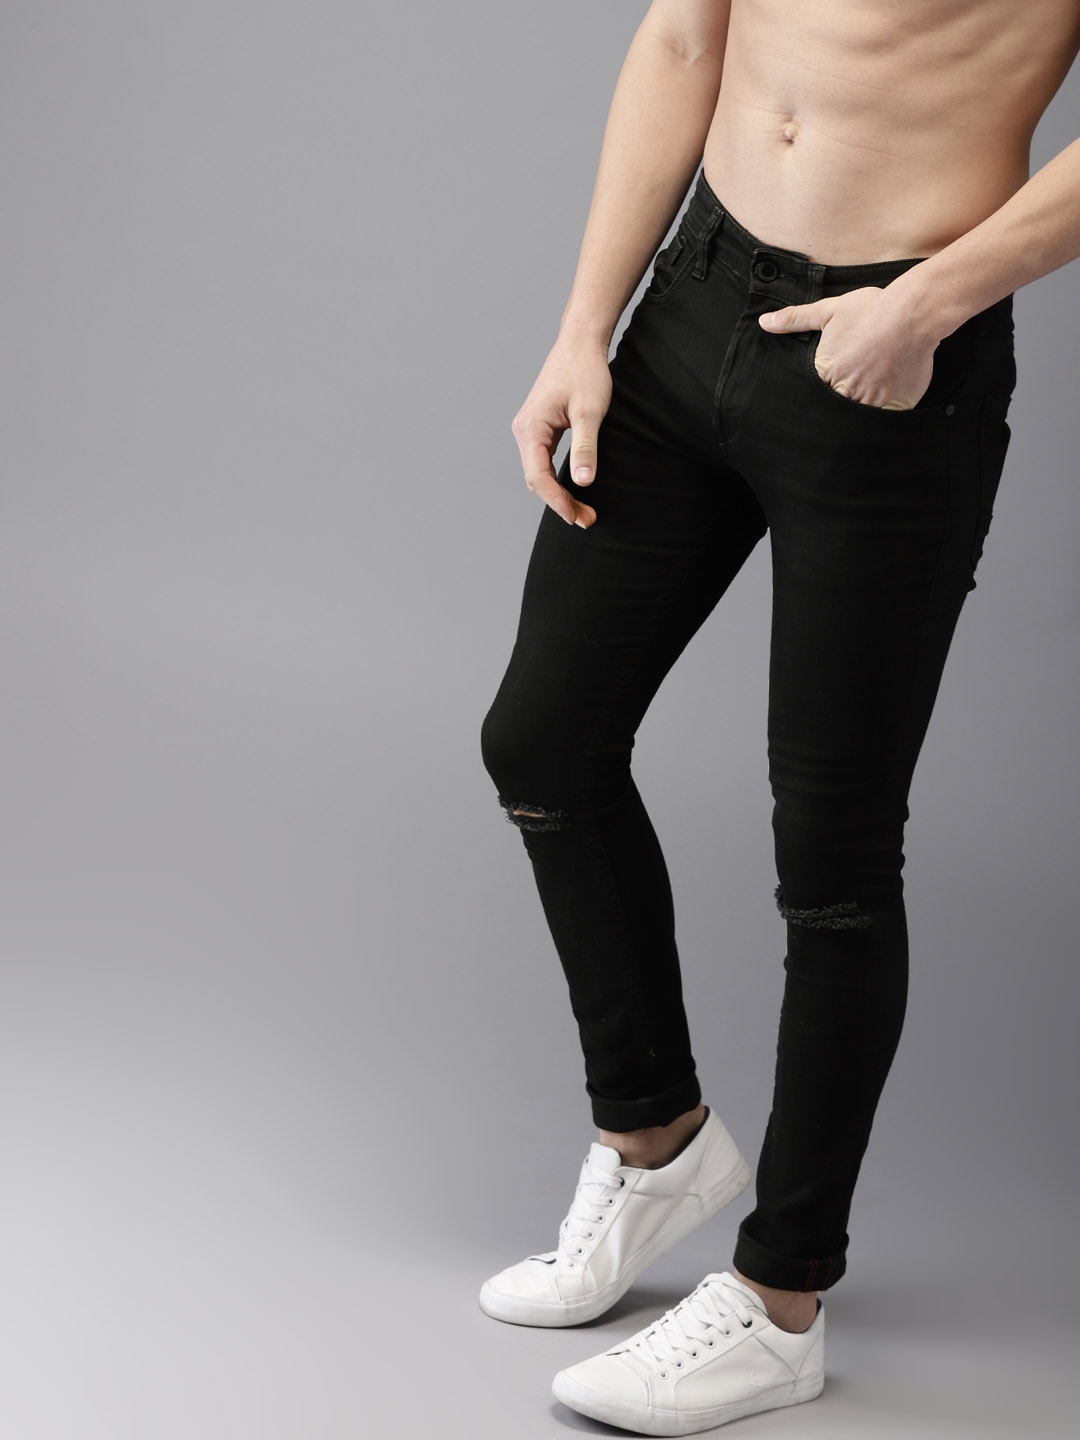 moda rapido jeans myntra